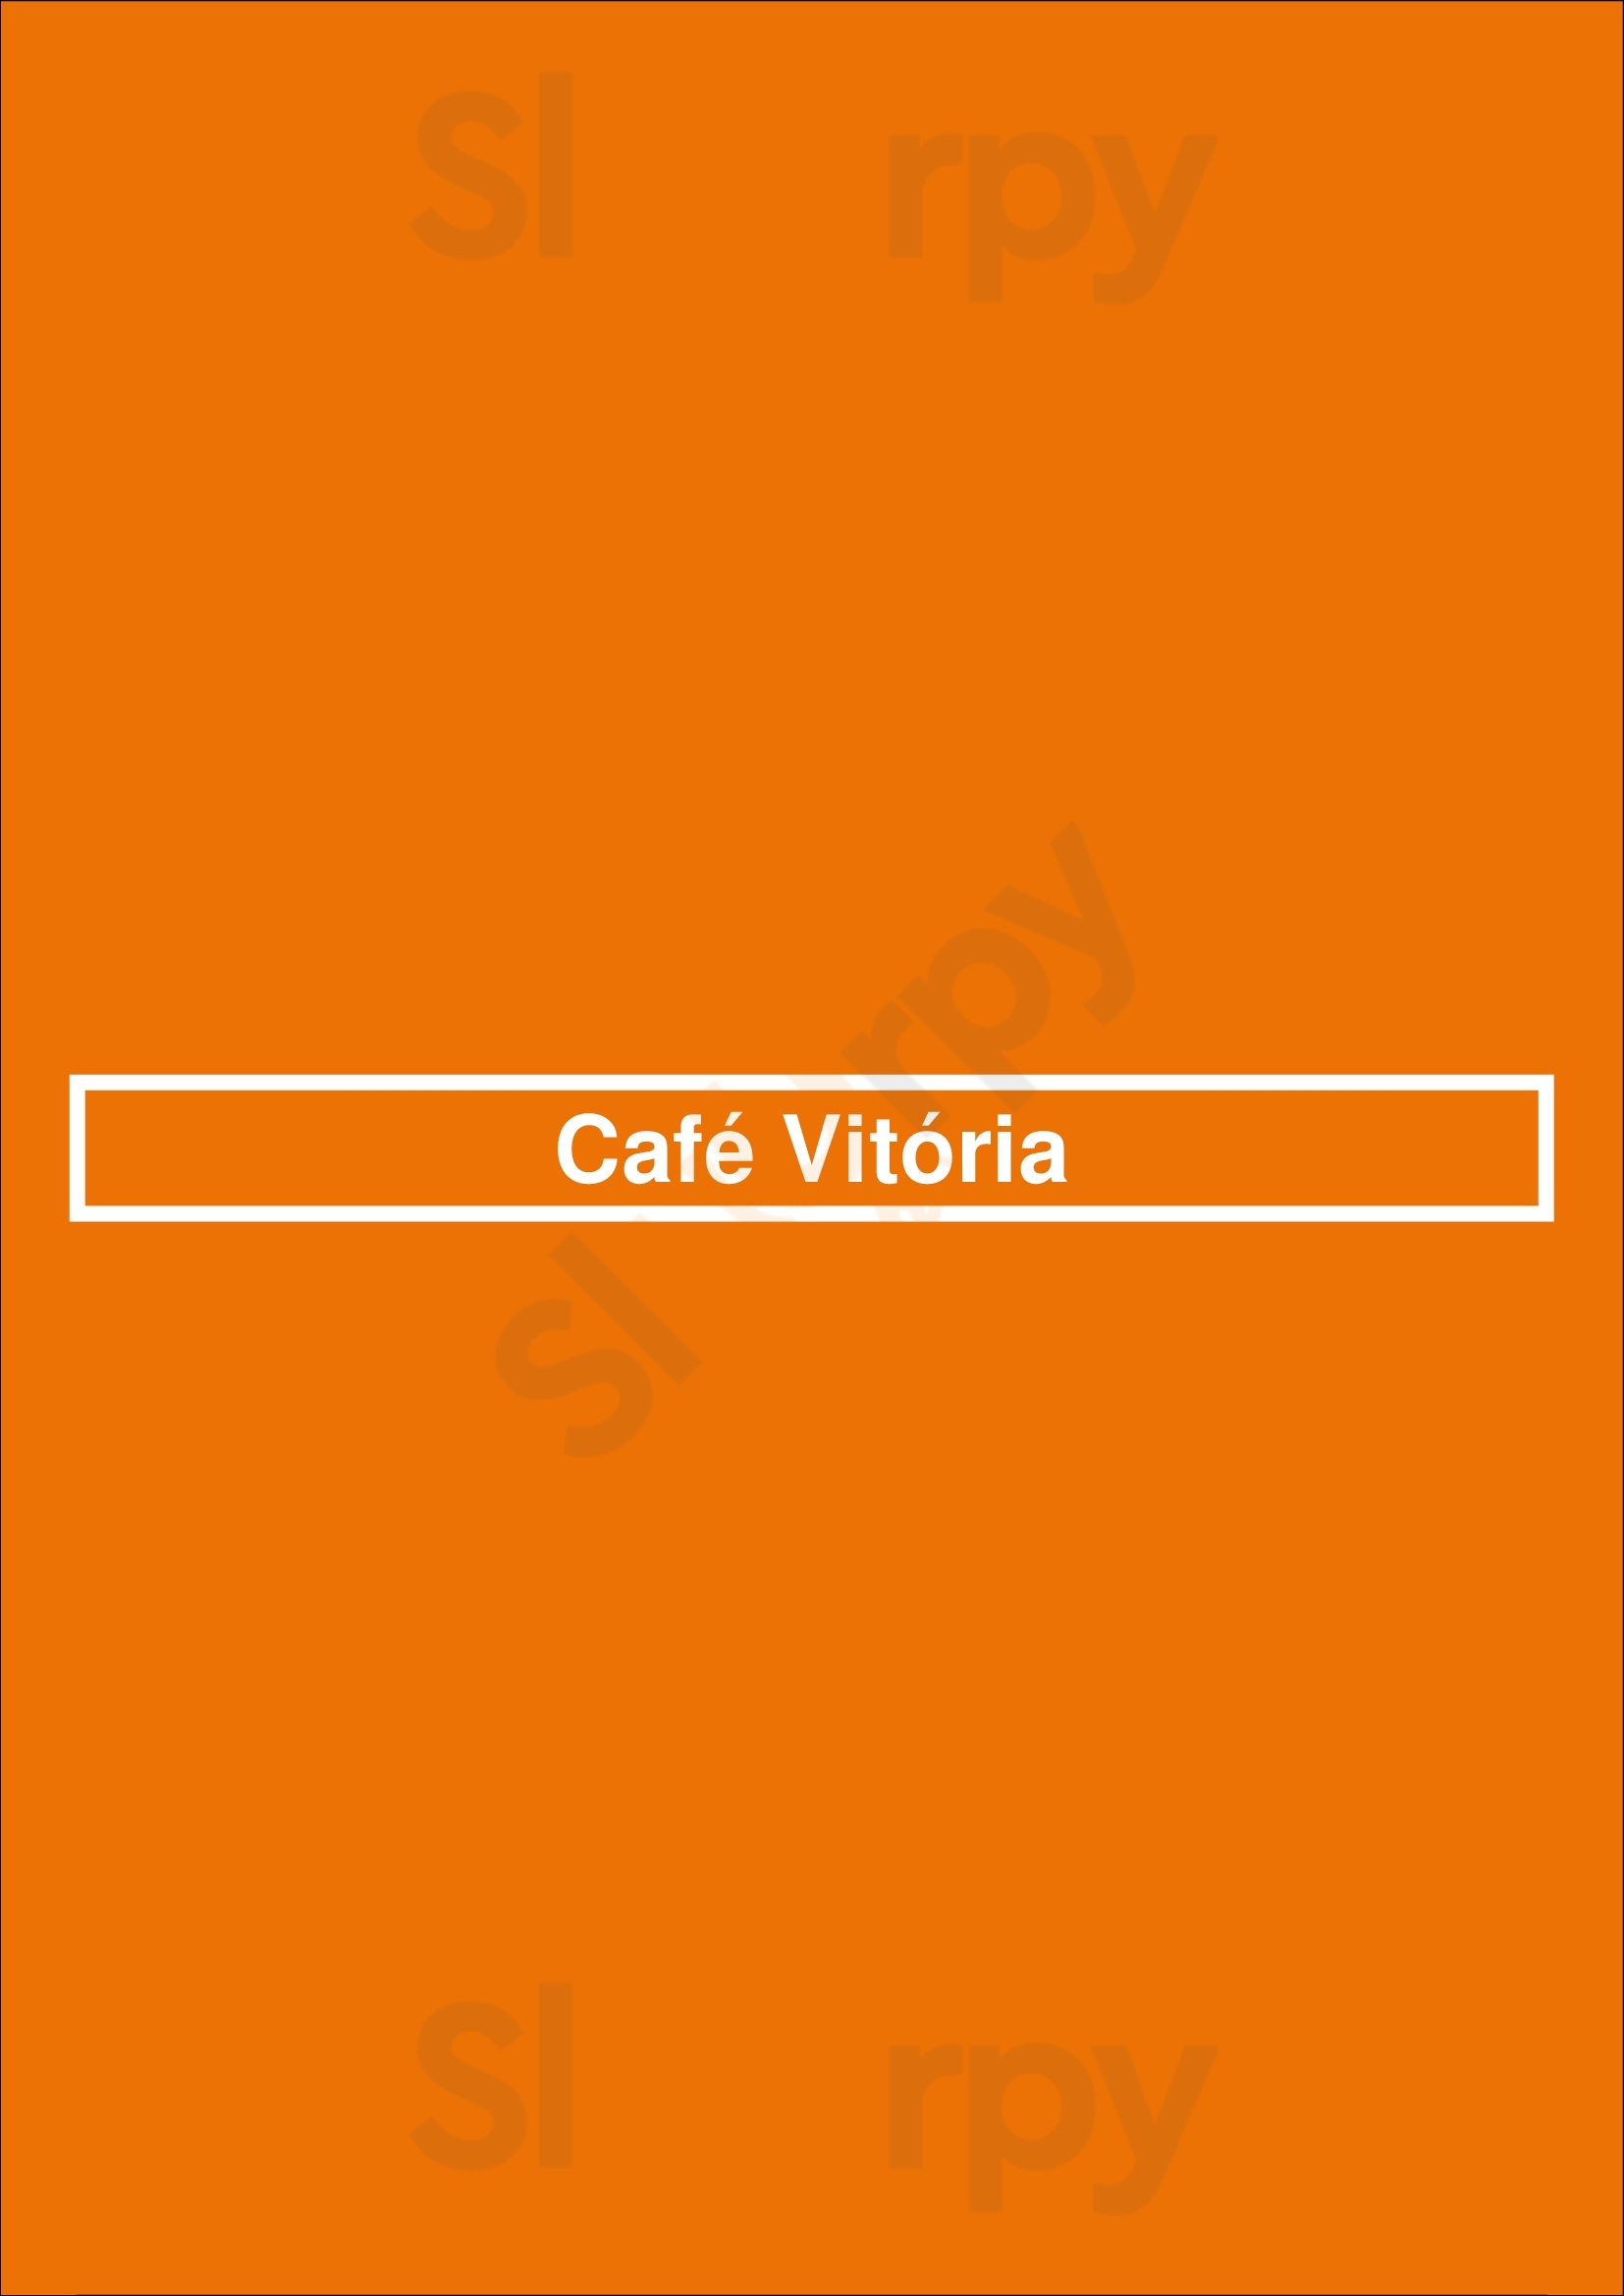 Café Vitória Porto Menu - 1